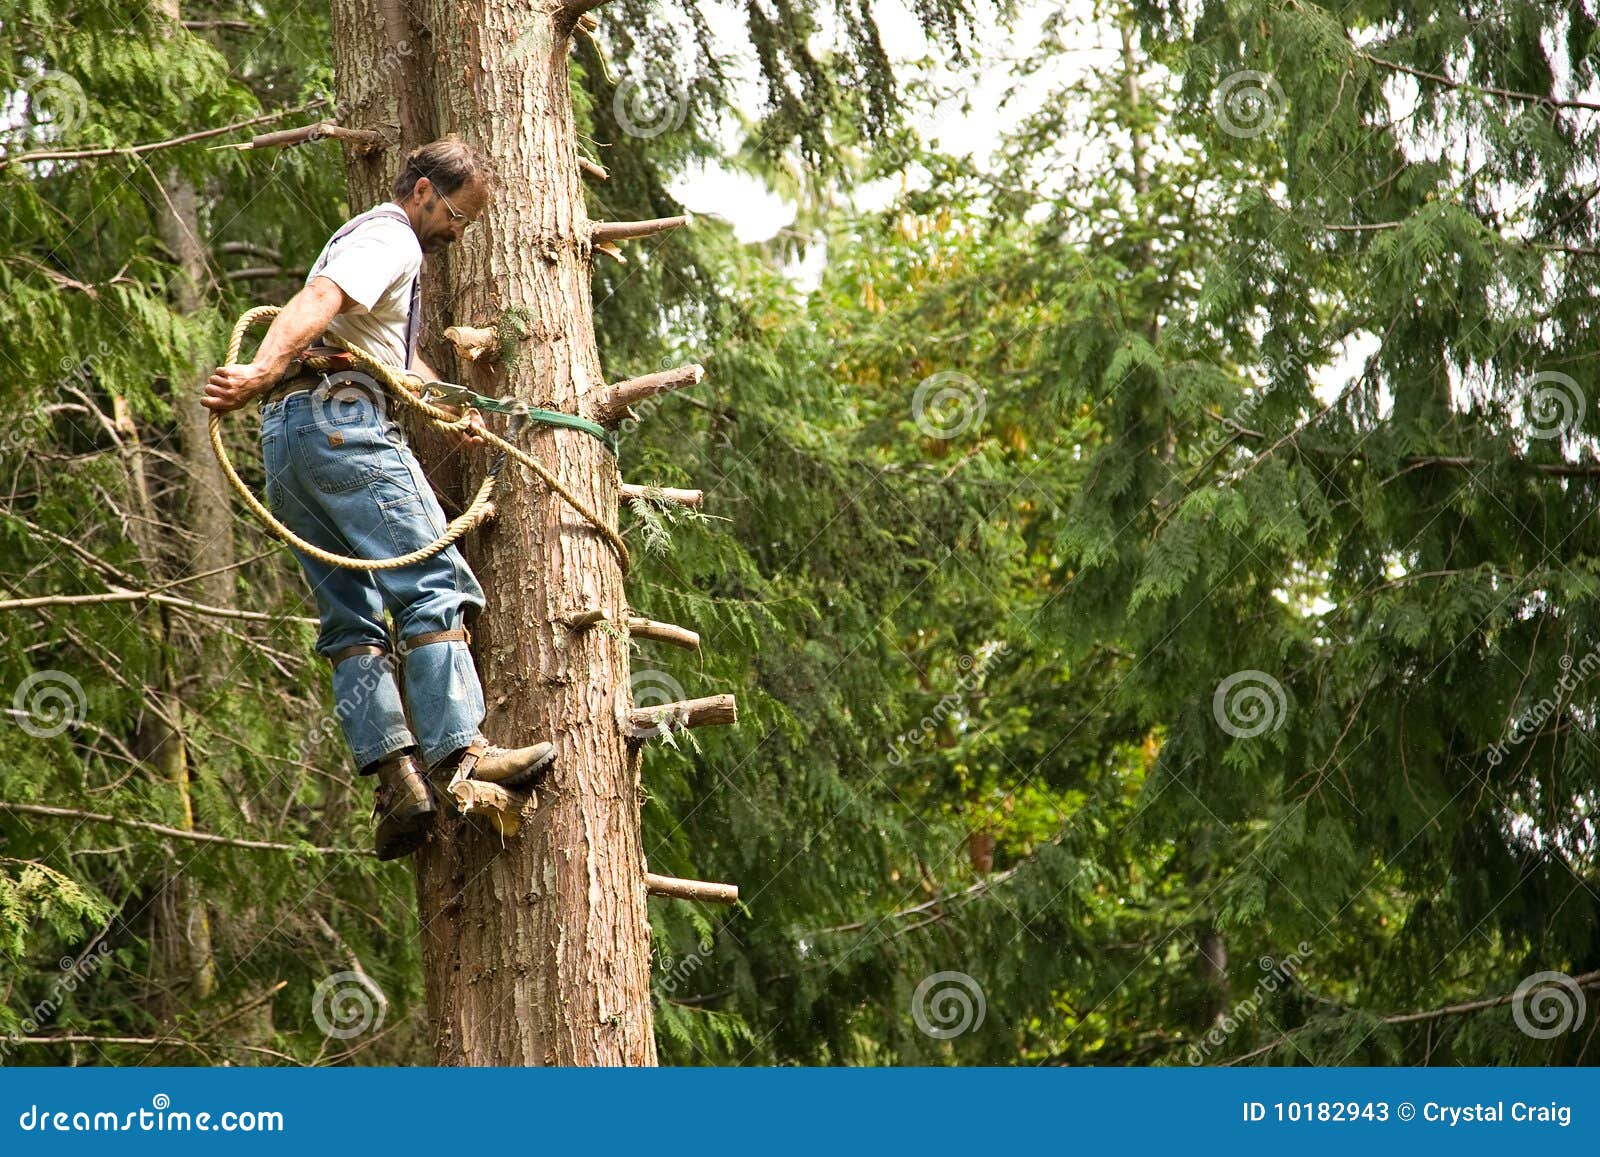 tree climber and logger